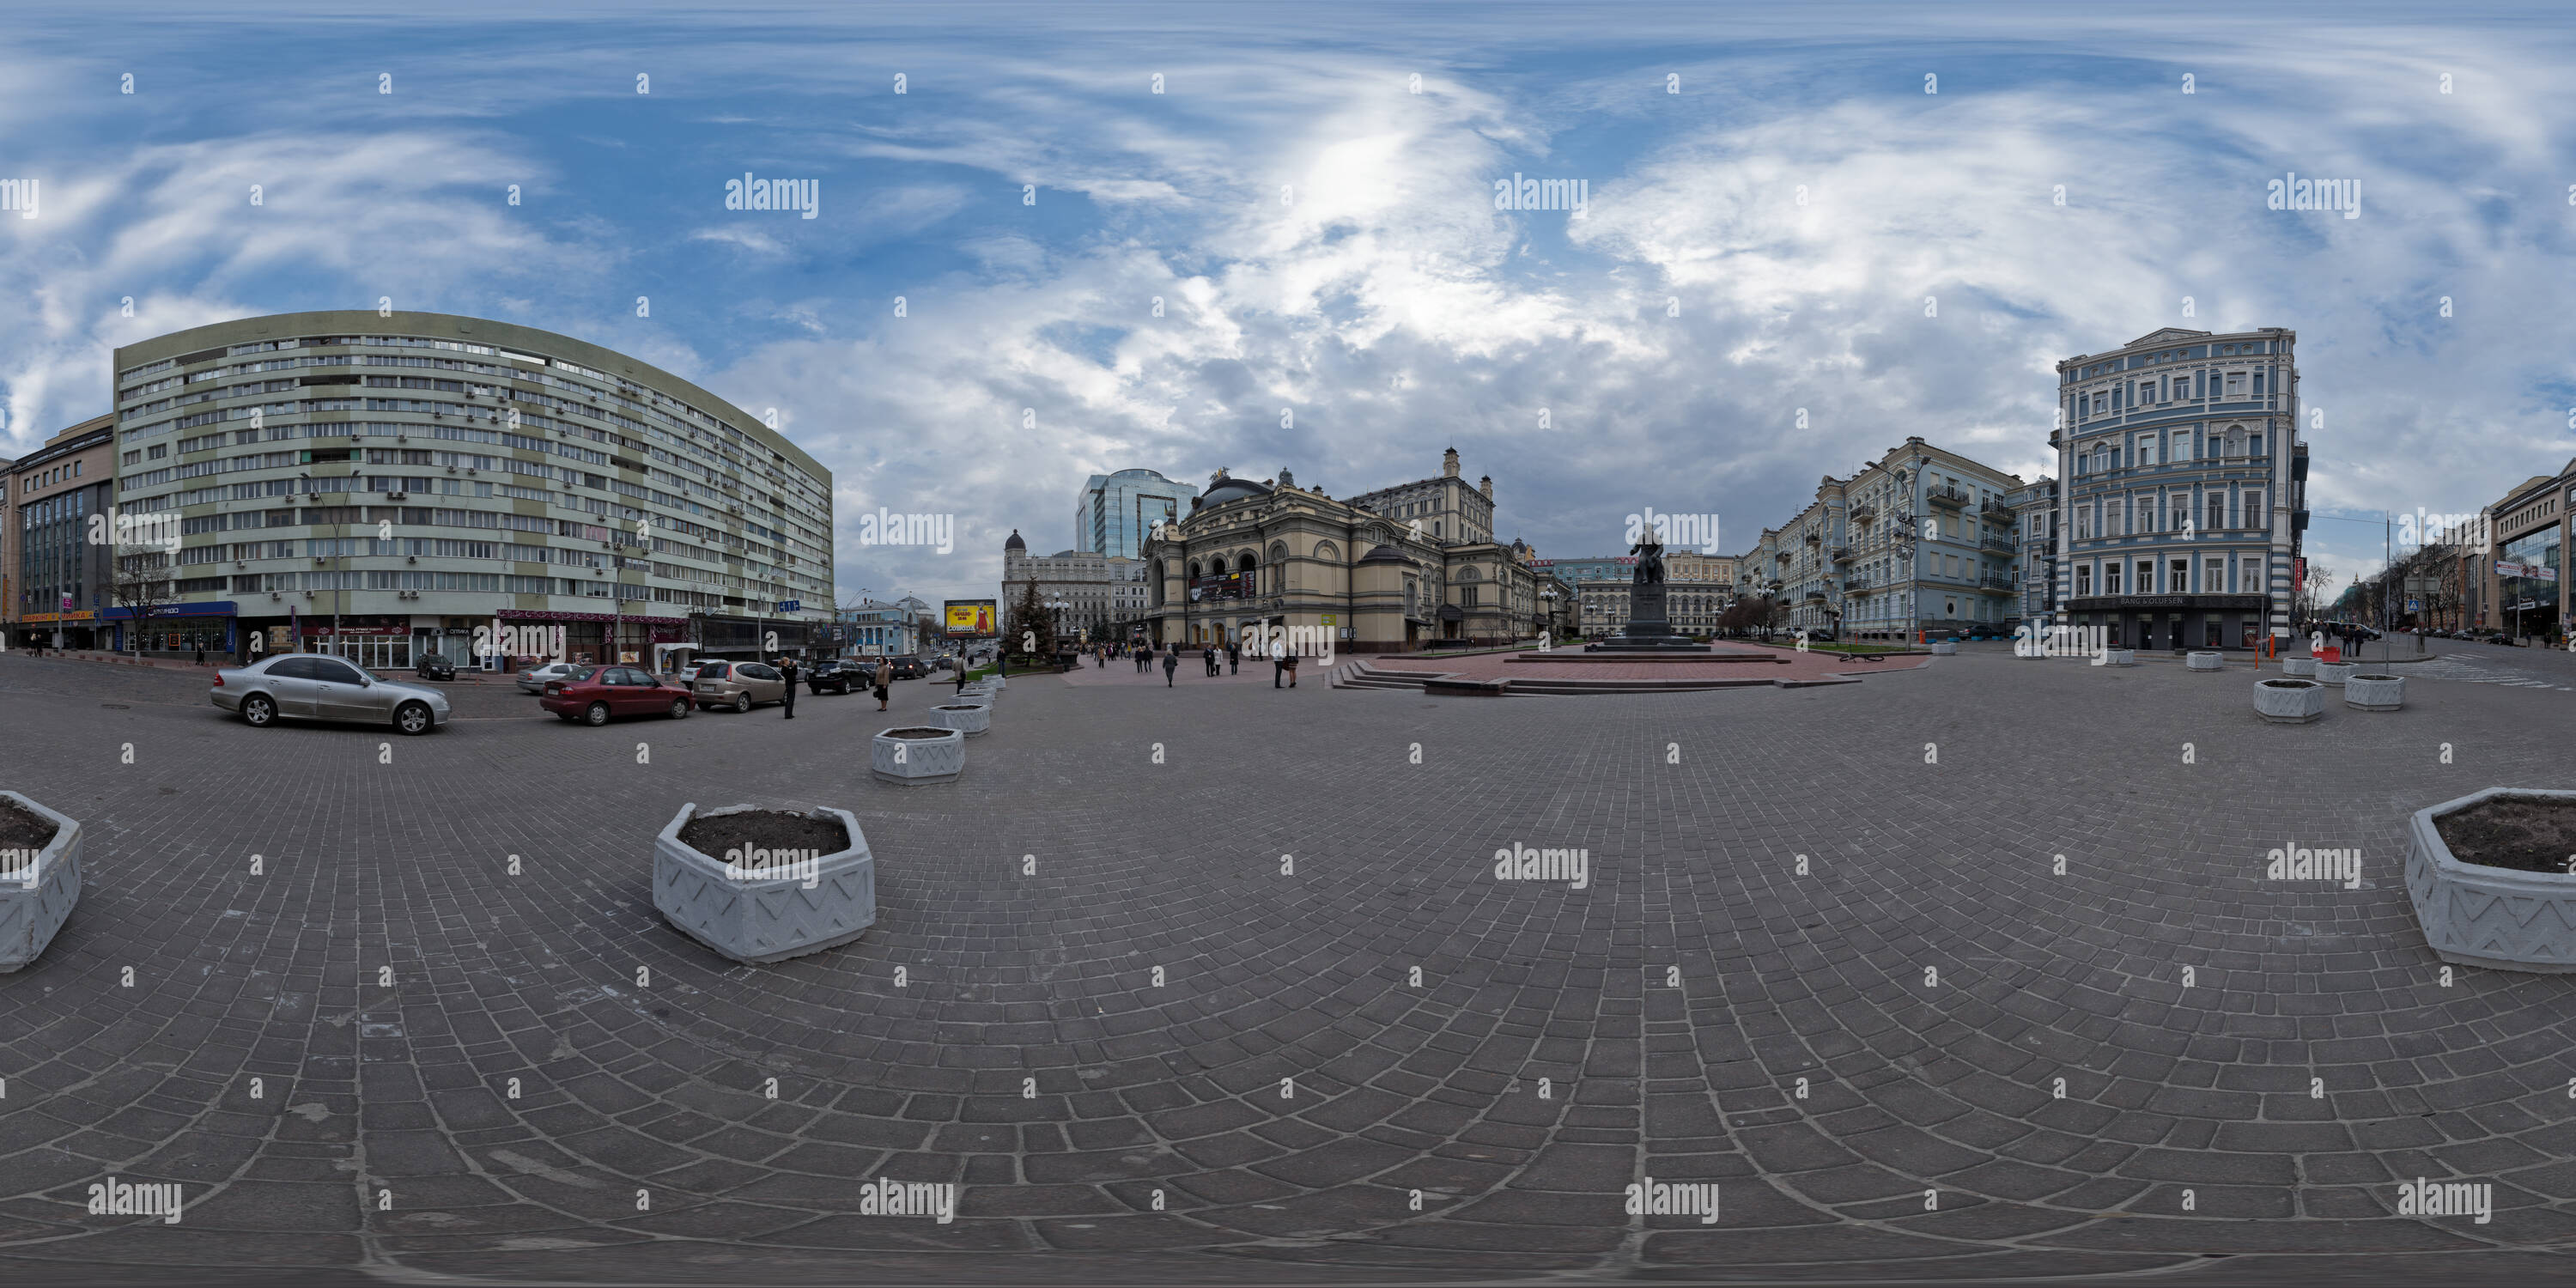 360 degree panoramic view of The Taras Shevchenko Ukrainian National Opera House and Vladimirskaya Street